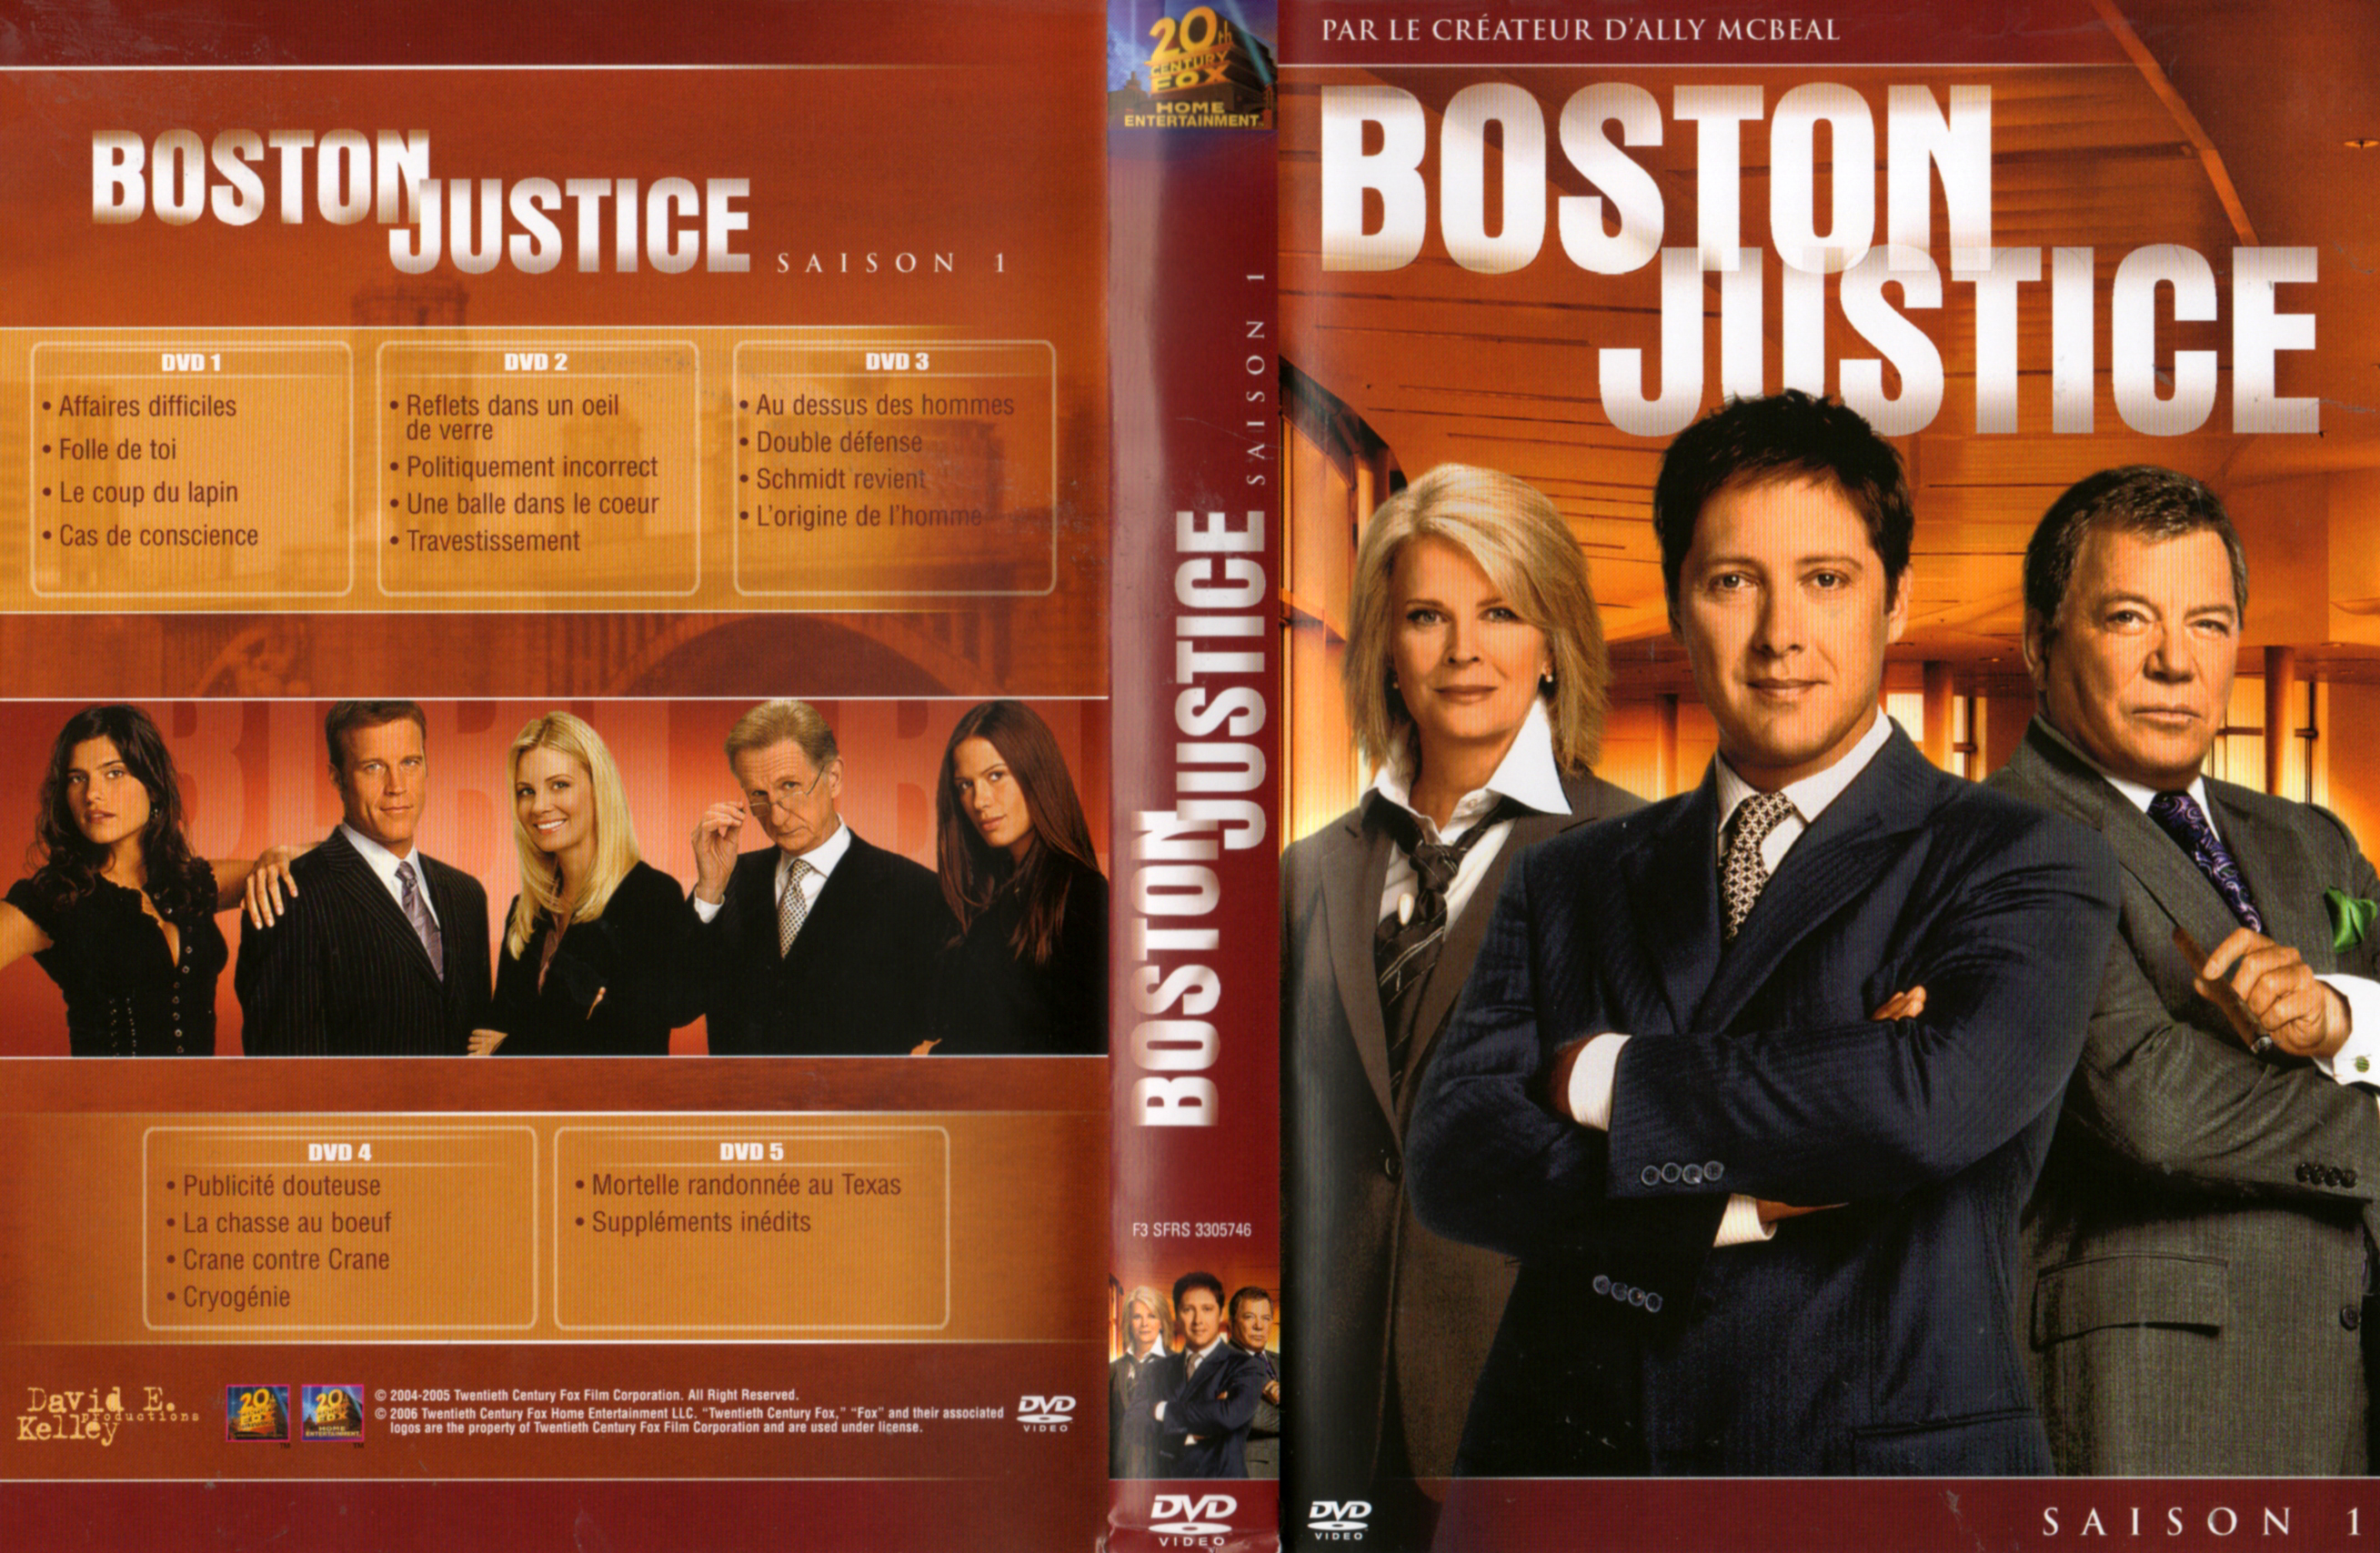 Jaquette DVD Boston justice Saison 1 COFFRET